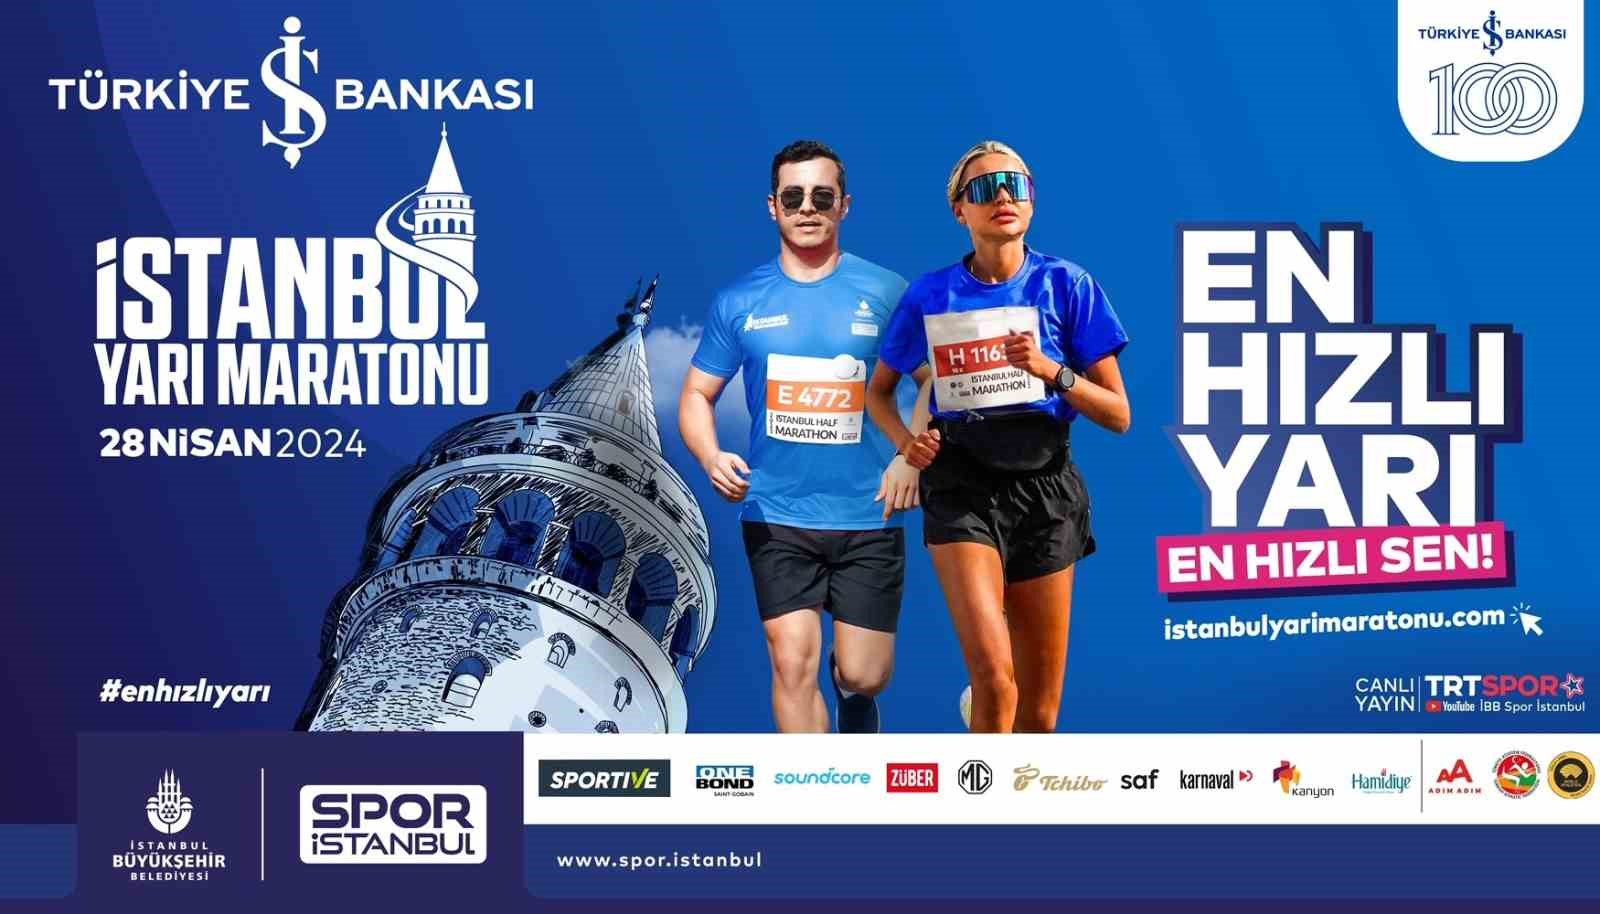 Türkiye İş Bankası 19. İstanbul Yarı Maratonu, pazar günü koşulacak
